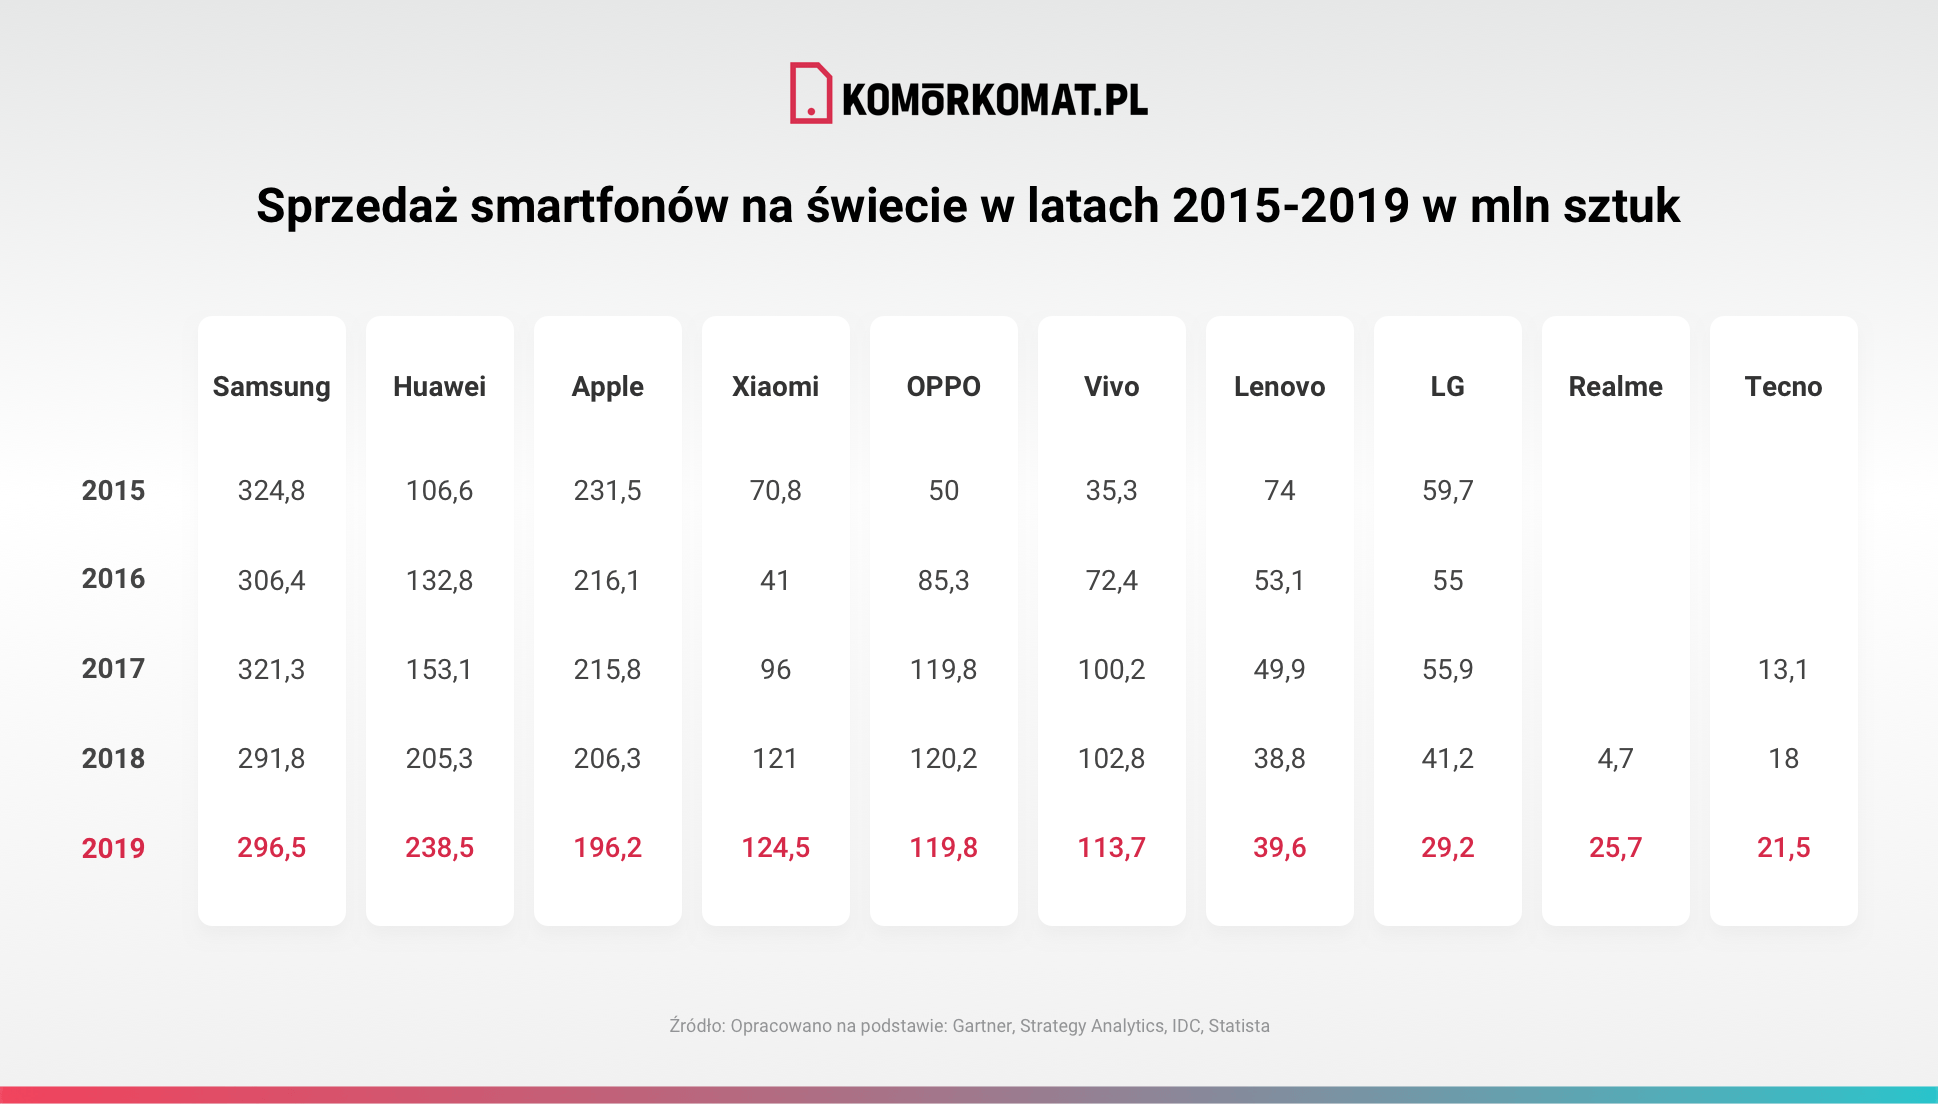 Sprzedaż smartfonów na świecie w latach 2015-2019 w mln sztuk_v1